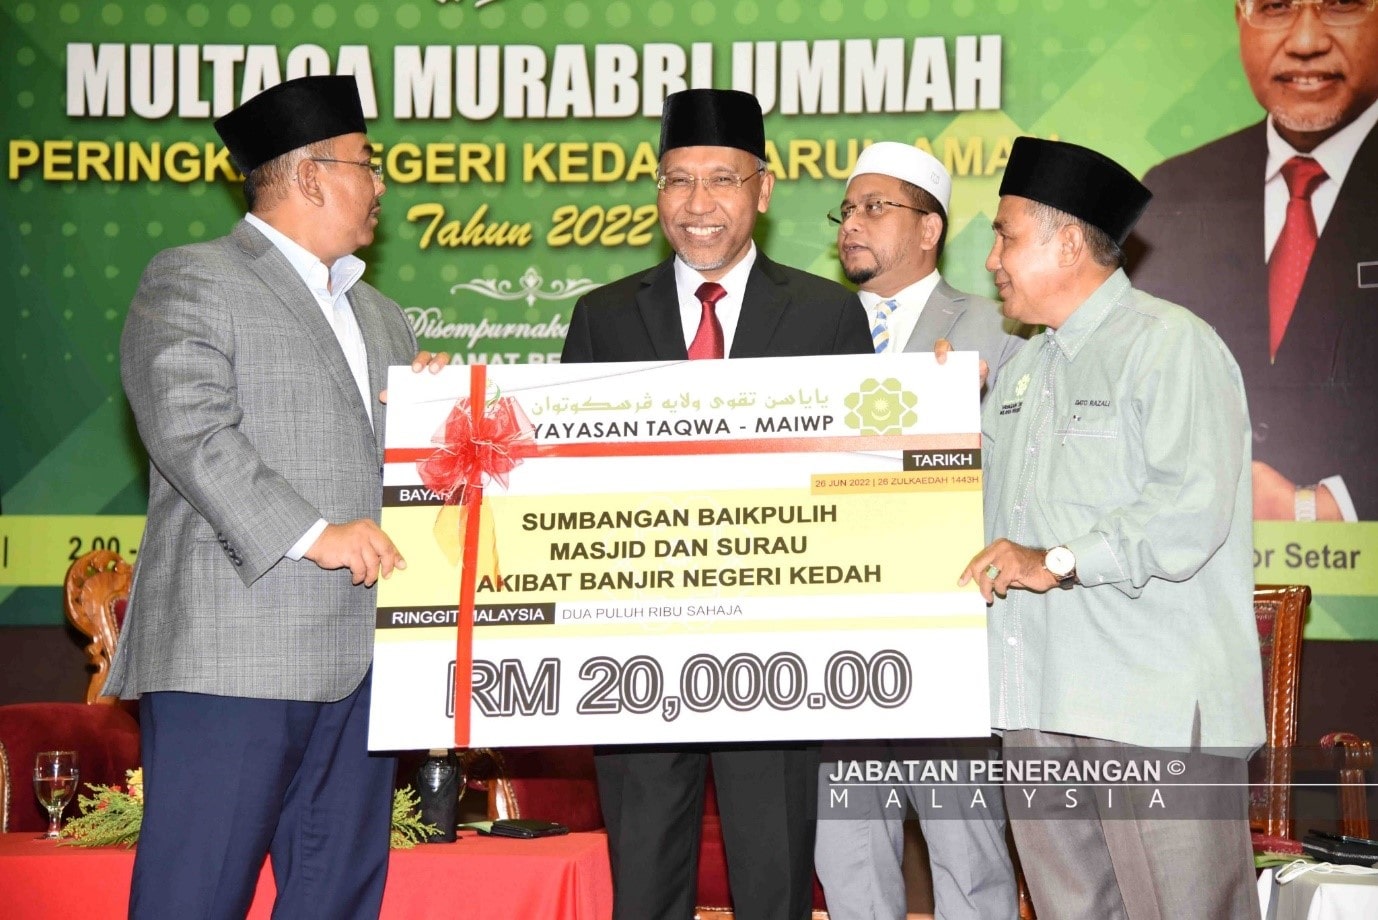 Multaqa Murabbi Ummah Peringkat Negeri Kedah 2022 2